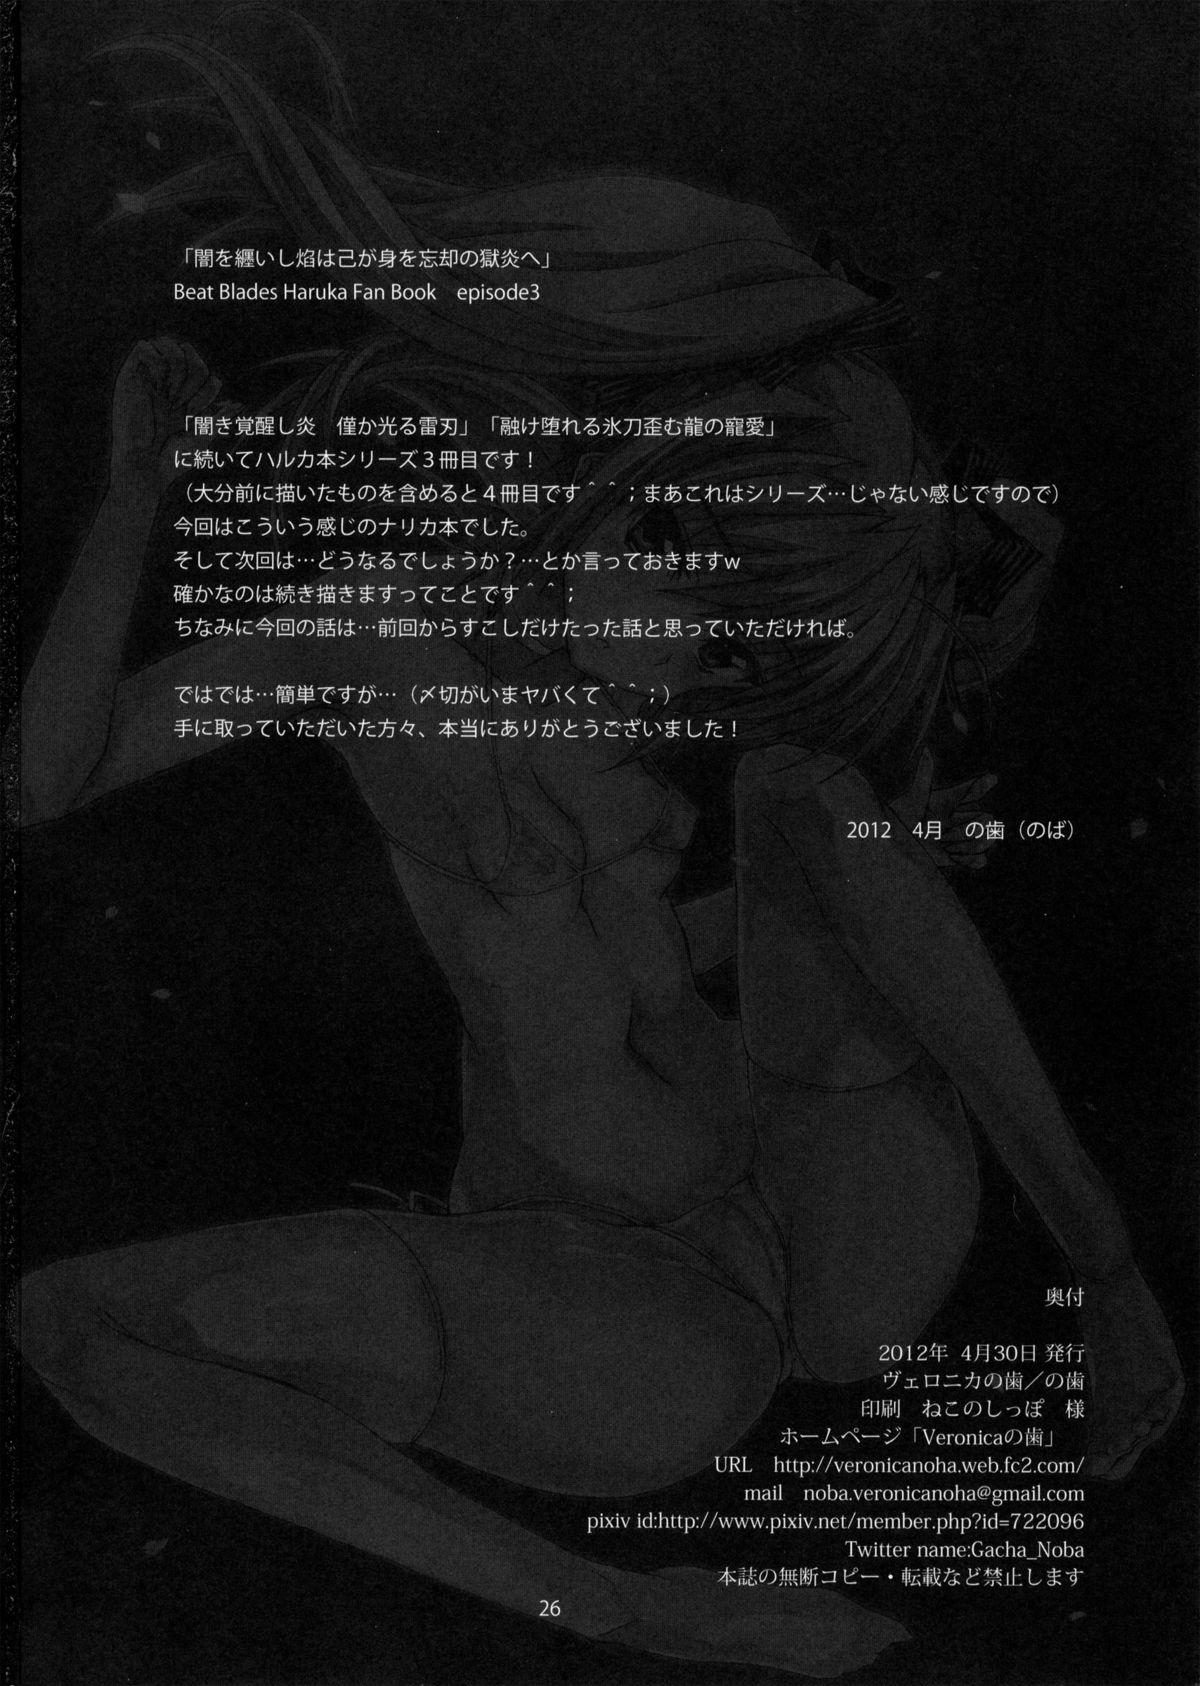 Fishnets Yami wo Matoishi Homura wa Ono ga Mi wo Boukyaku no Gokuen e - Beat blades haruka Stunning - Page 25